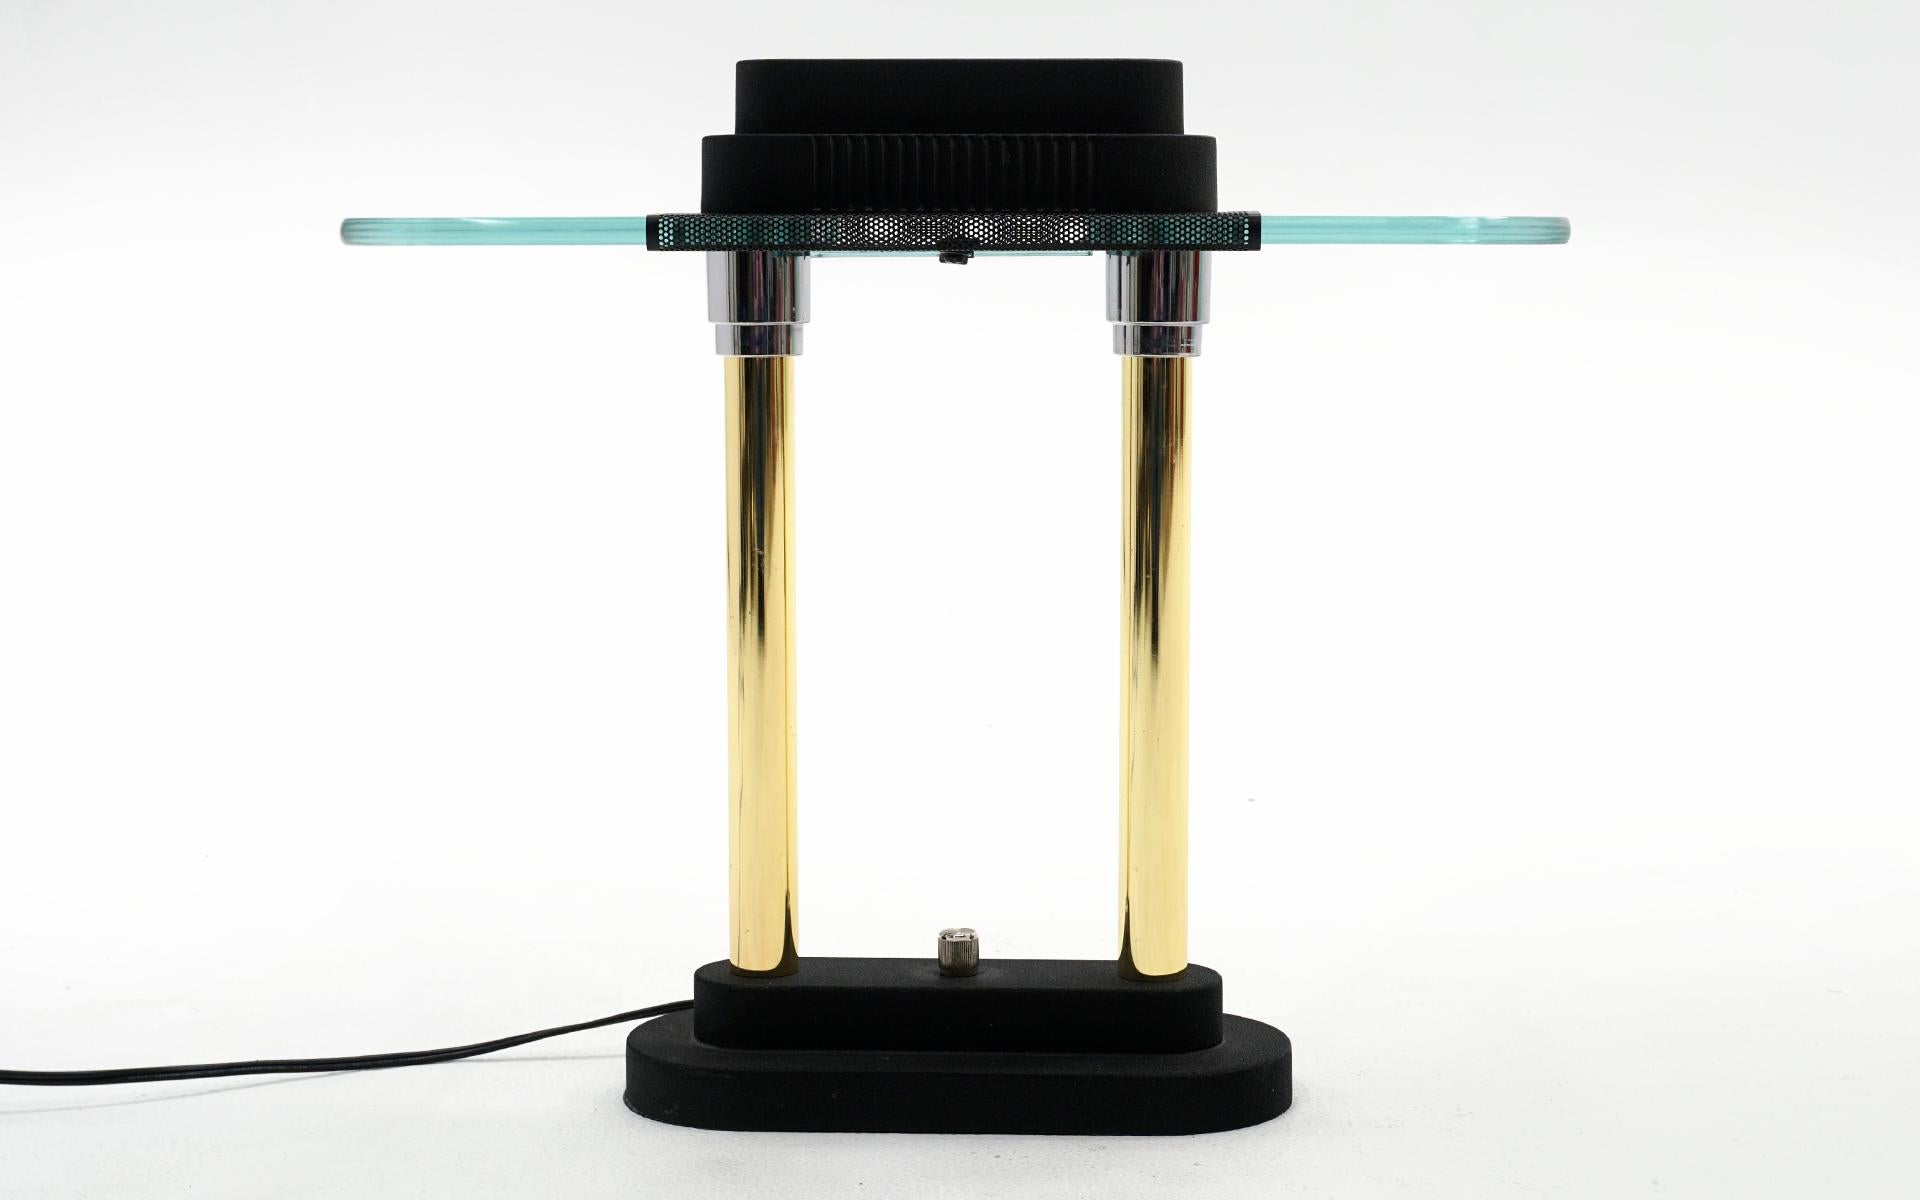 Lampe de table de style banquier conçue par Robert Sonneman, années 1980. Fonctionne parfaitement, ampoule halogène incluse. Très peu de signes d'utilisation, voire aucun.